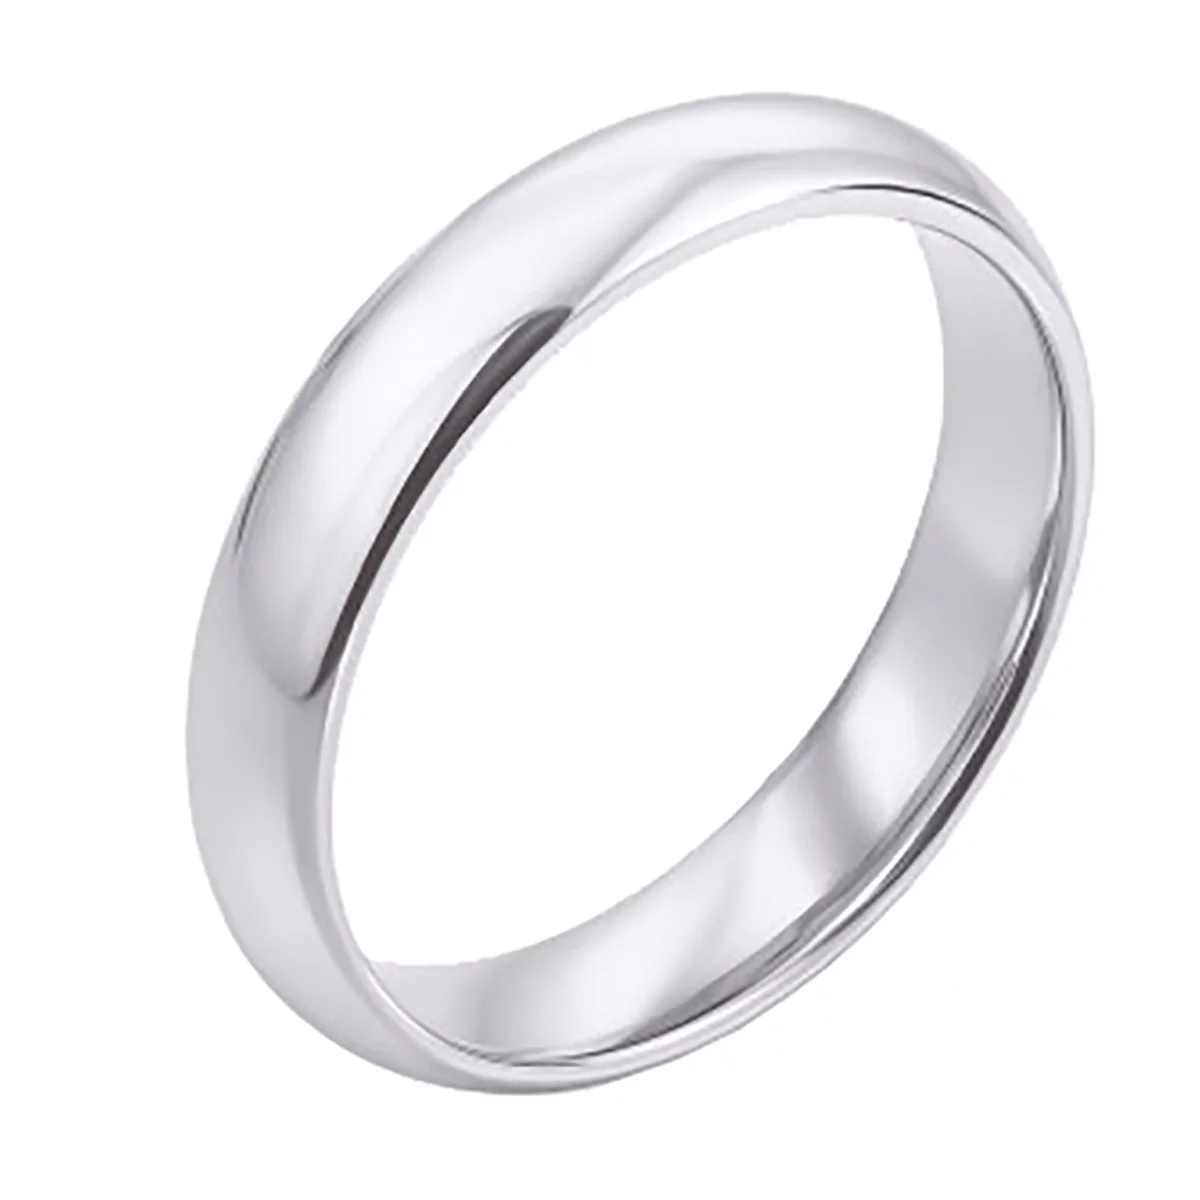 Обручальное кольцо из белого золота серия Комфорт Классическое. Артикул 10171б: цена, отзывы, фото – купить в интернет-магазине AURUM